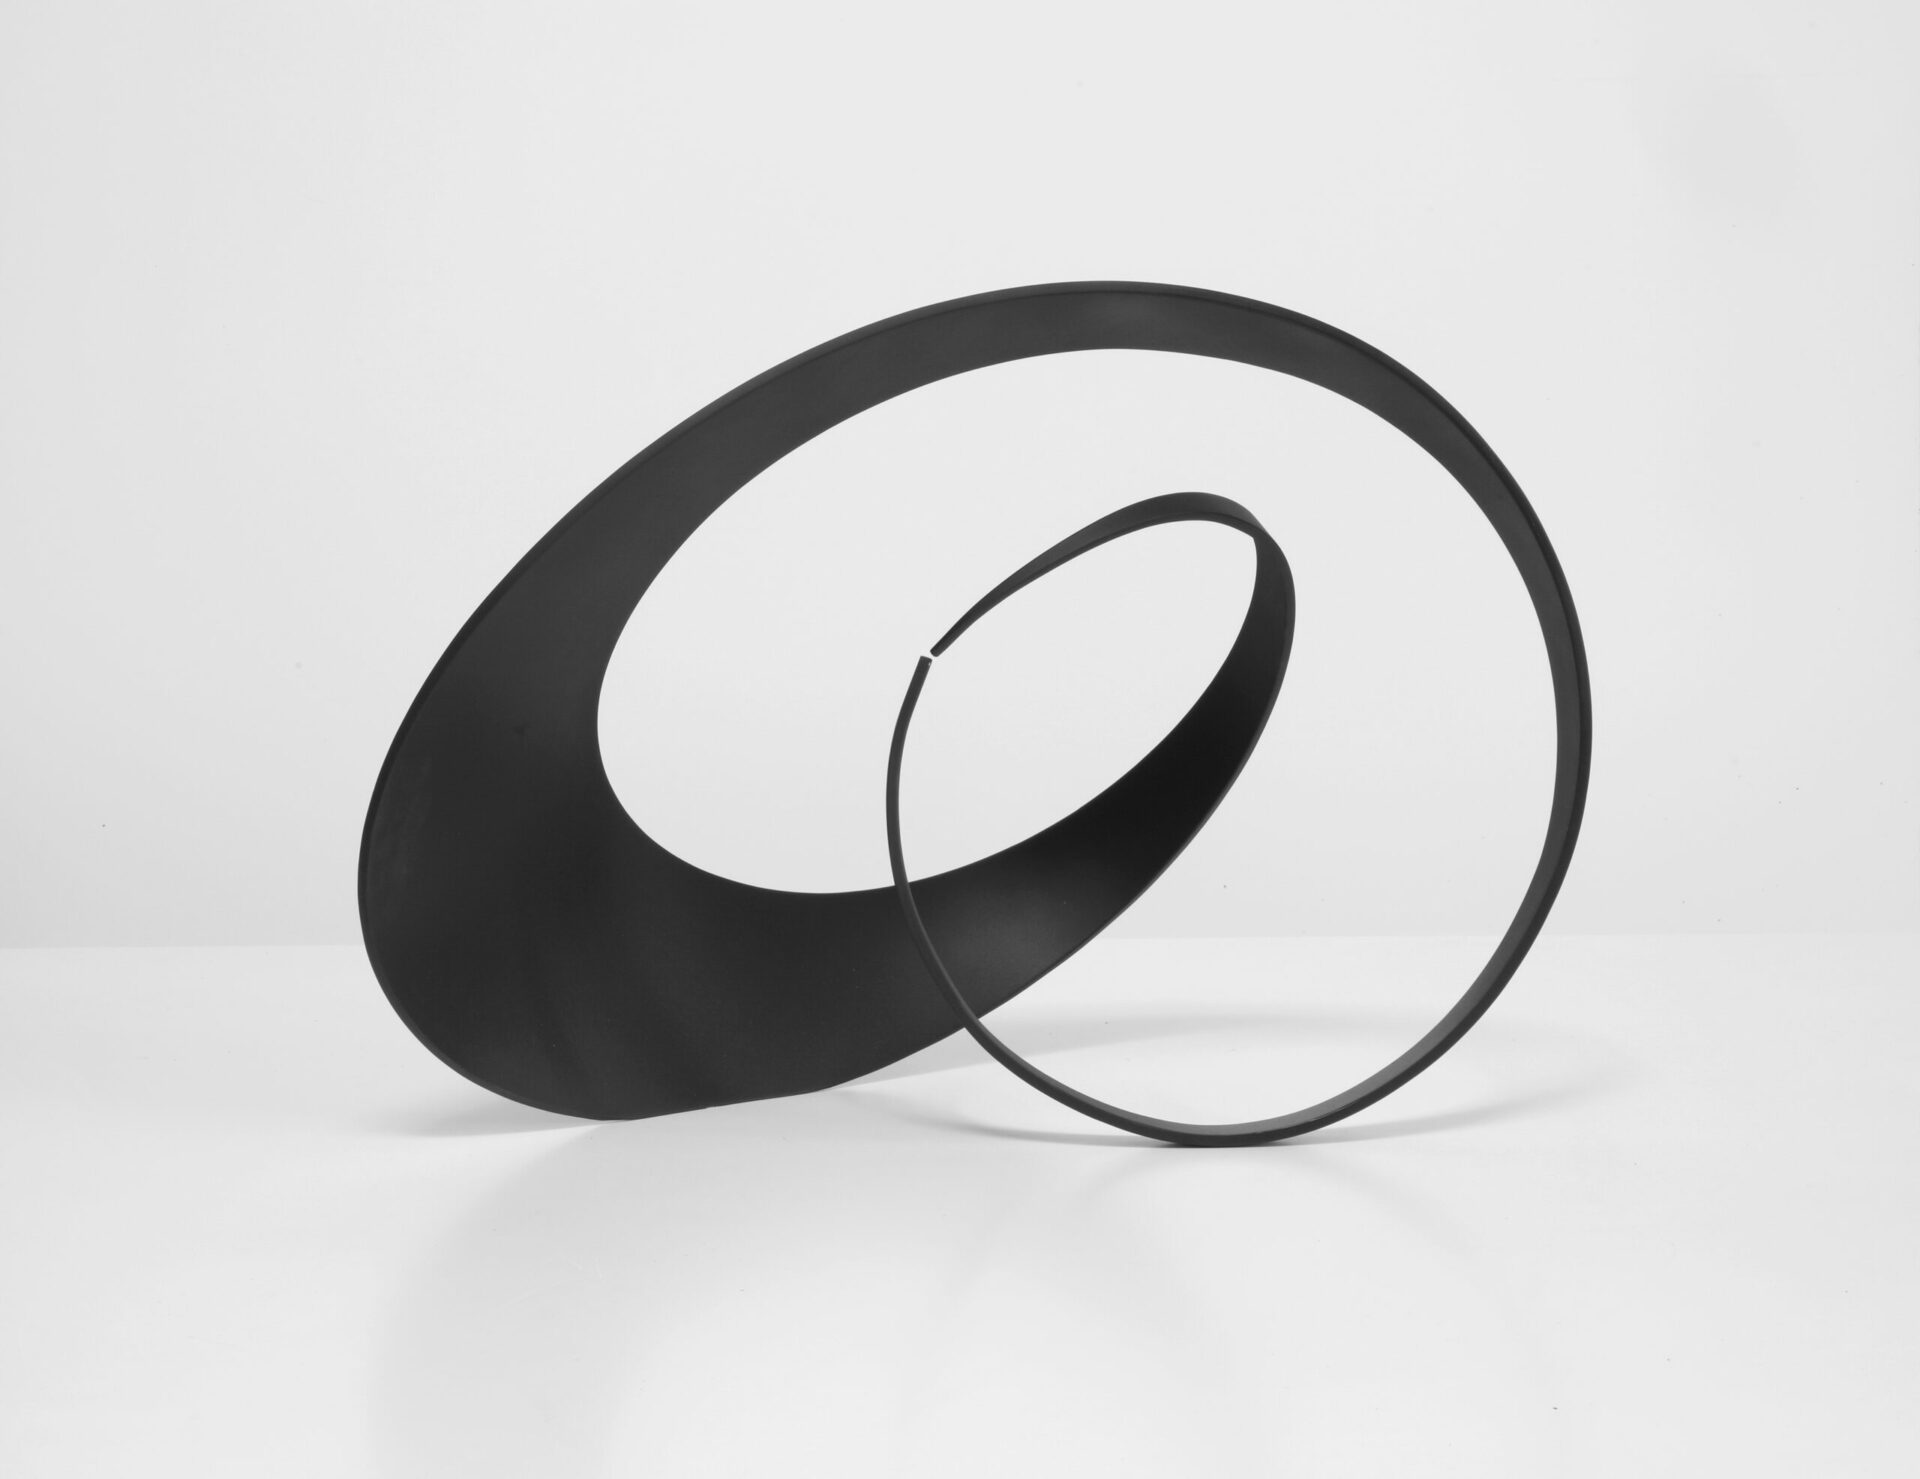 sculpture contemporaine abstraite metal peint noir de francis guerrier en vente a la galerie22